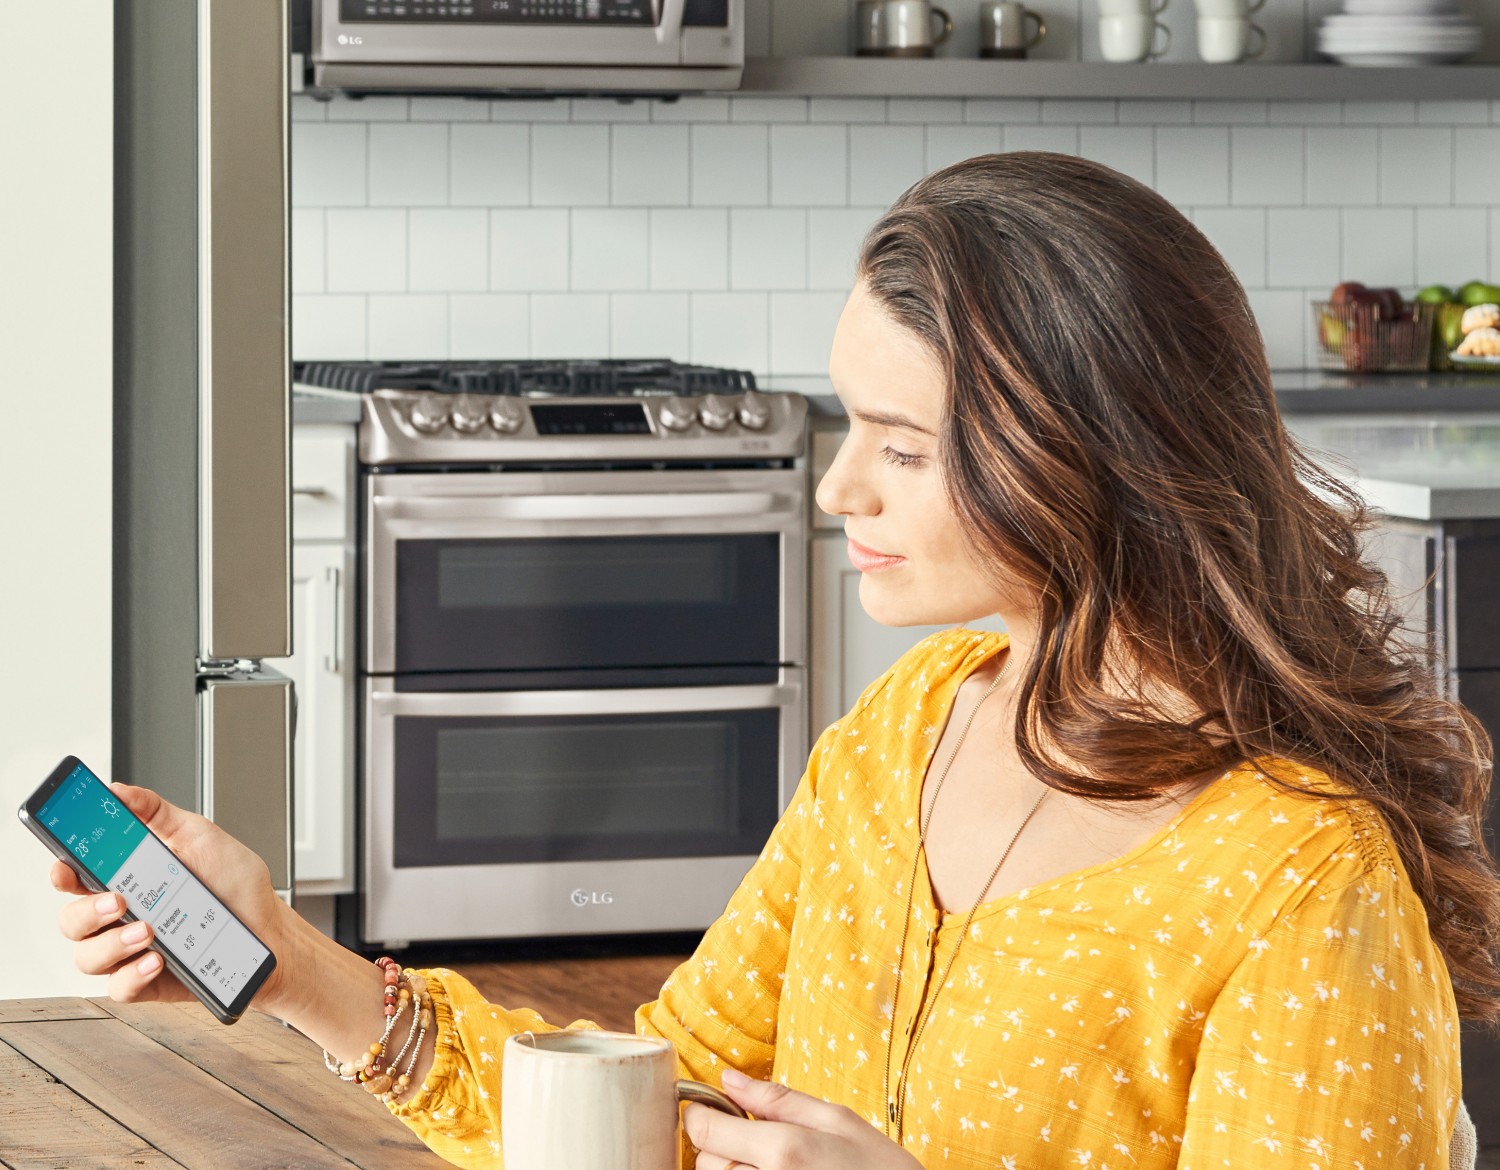 Produktvorstellung LG erleichtert Konnektivität zu smarten Haushaltsgeräten – Neue App mit Spracherkennung - News, Bild 1